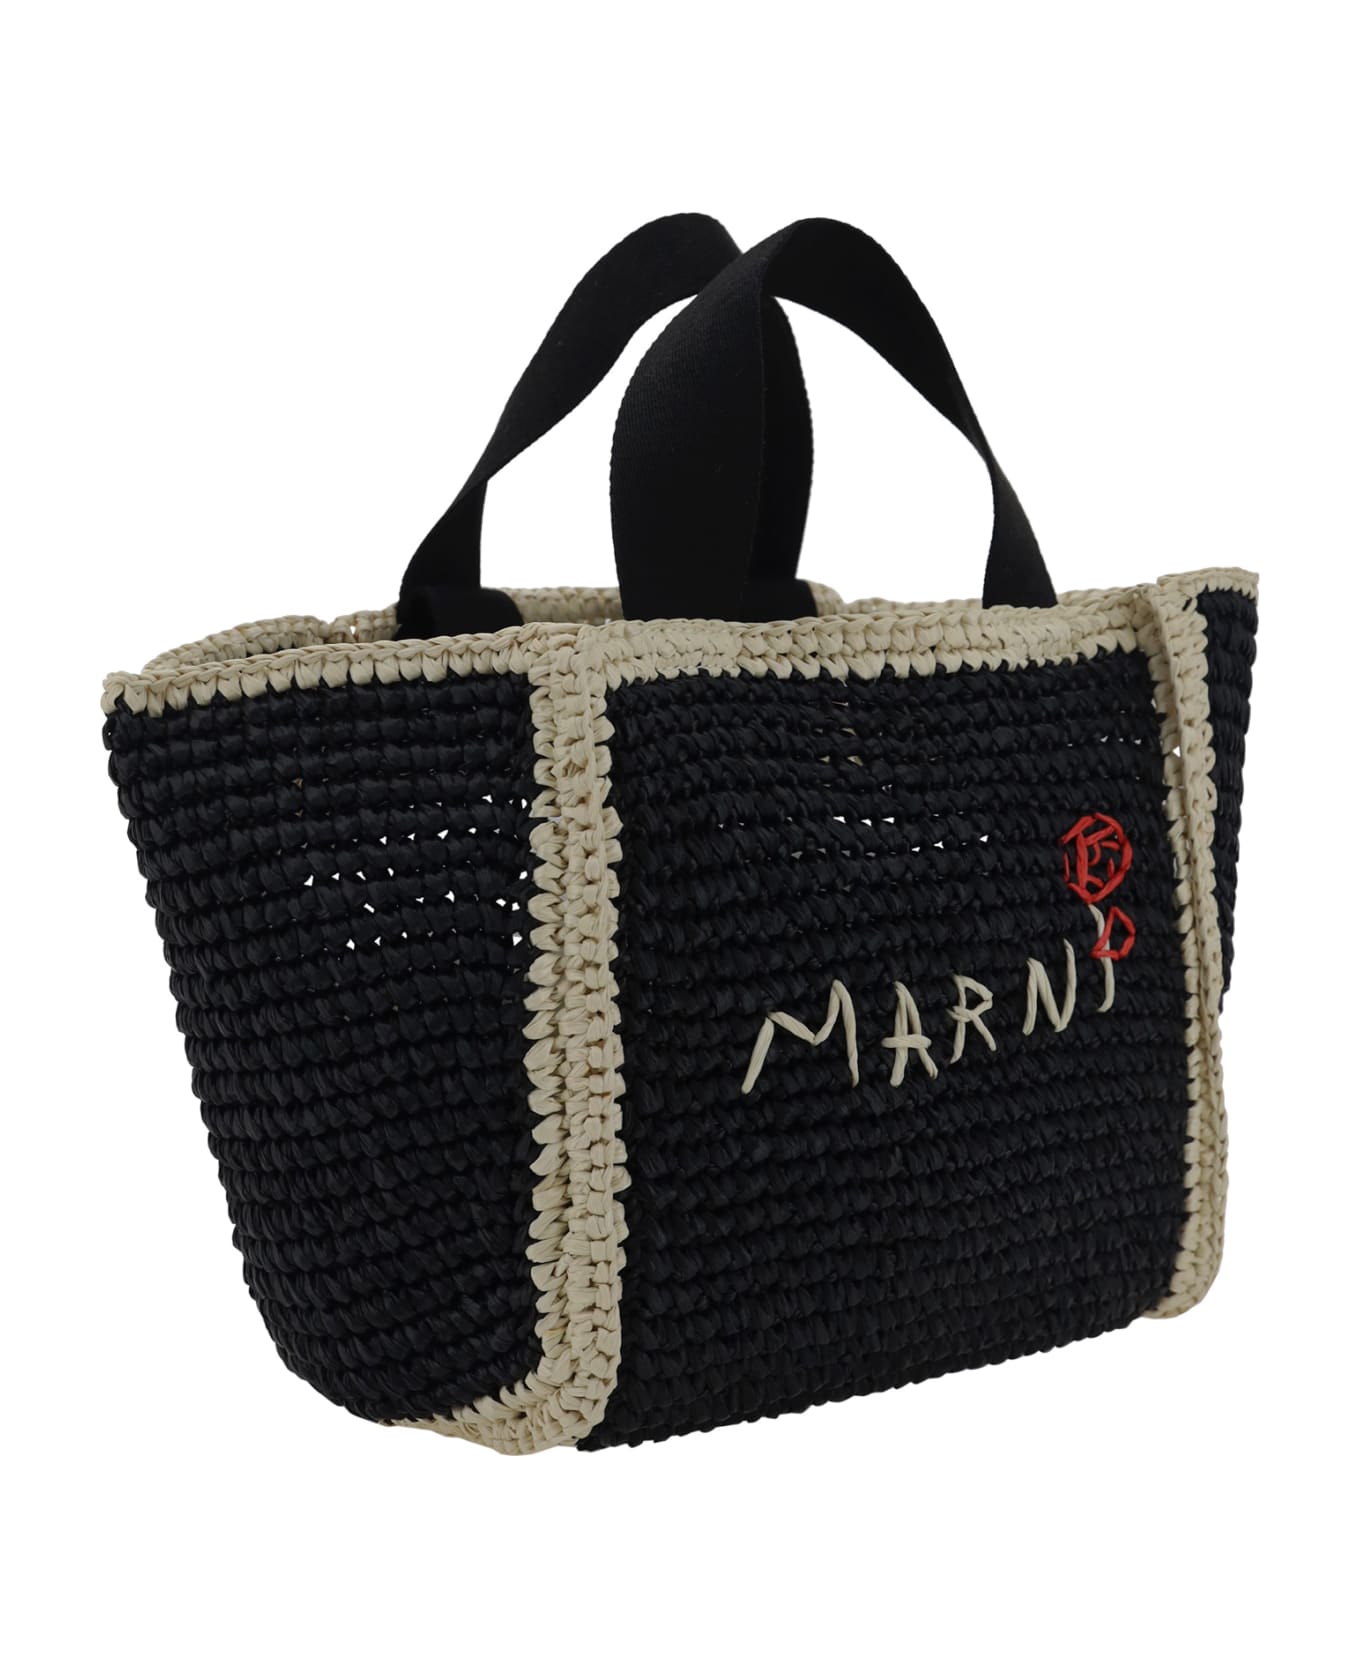 Marni Sillo Handbag - Black/ivory/black バッグ